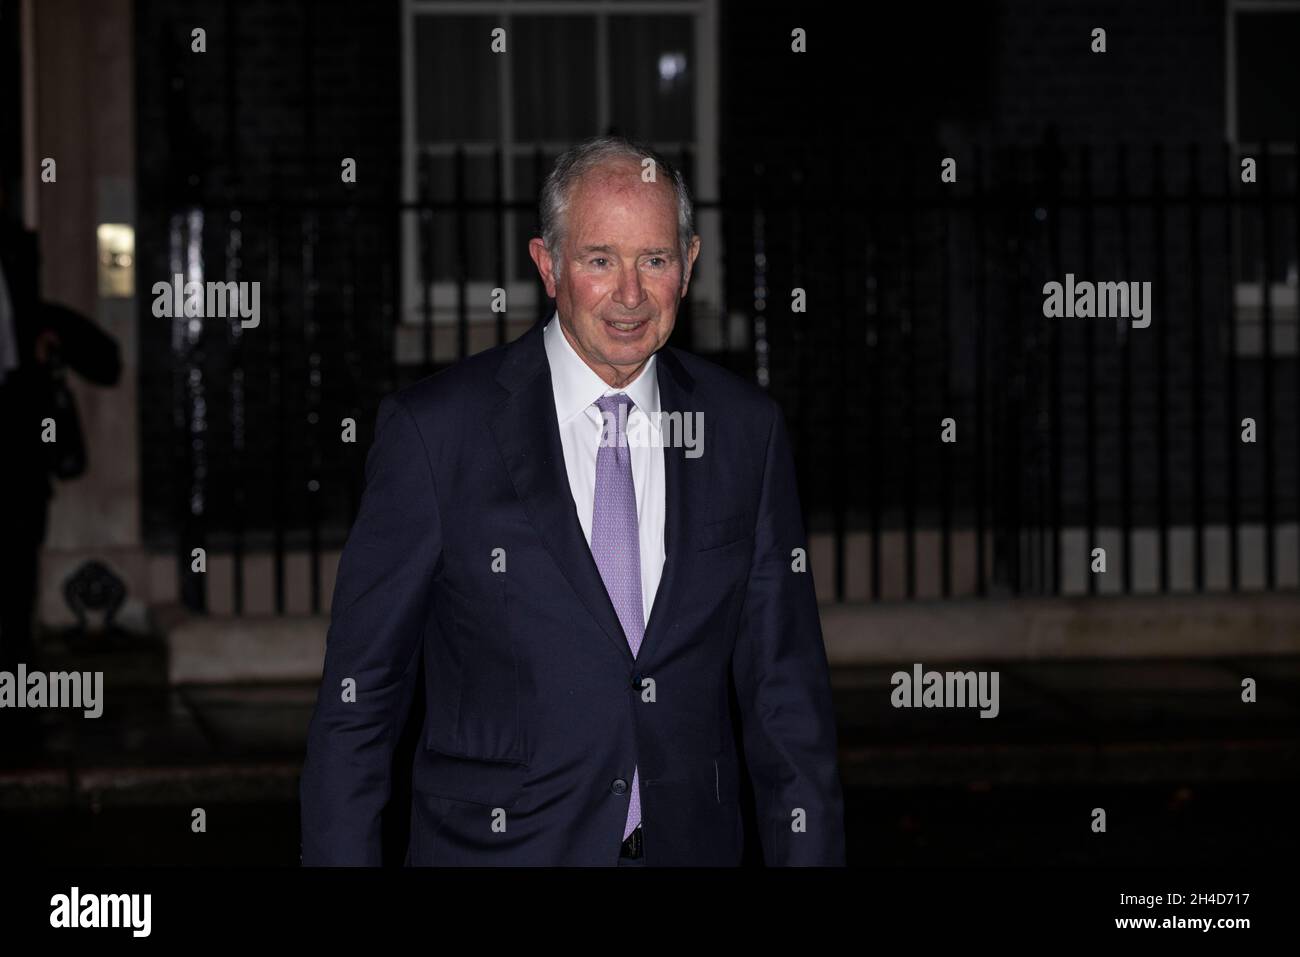 Der Premierminister lädt die führenden Wirtschaftsvertreter der Welt, Stephen Schwarzman, CEO von Blackstone, zur Downing Street 10 ein, um „Global Britain“ zu gründen. Stockfoto